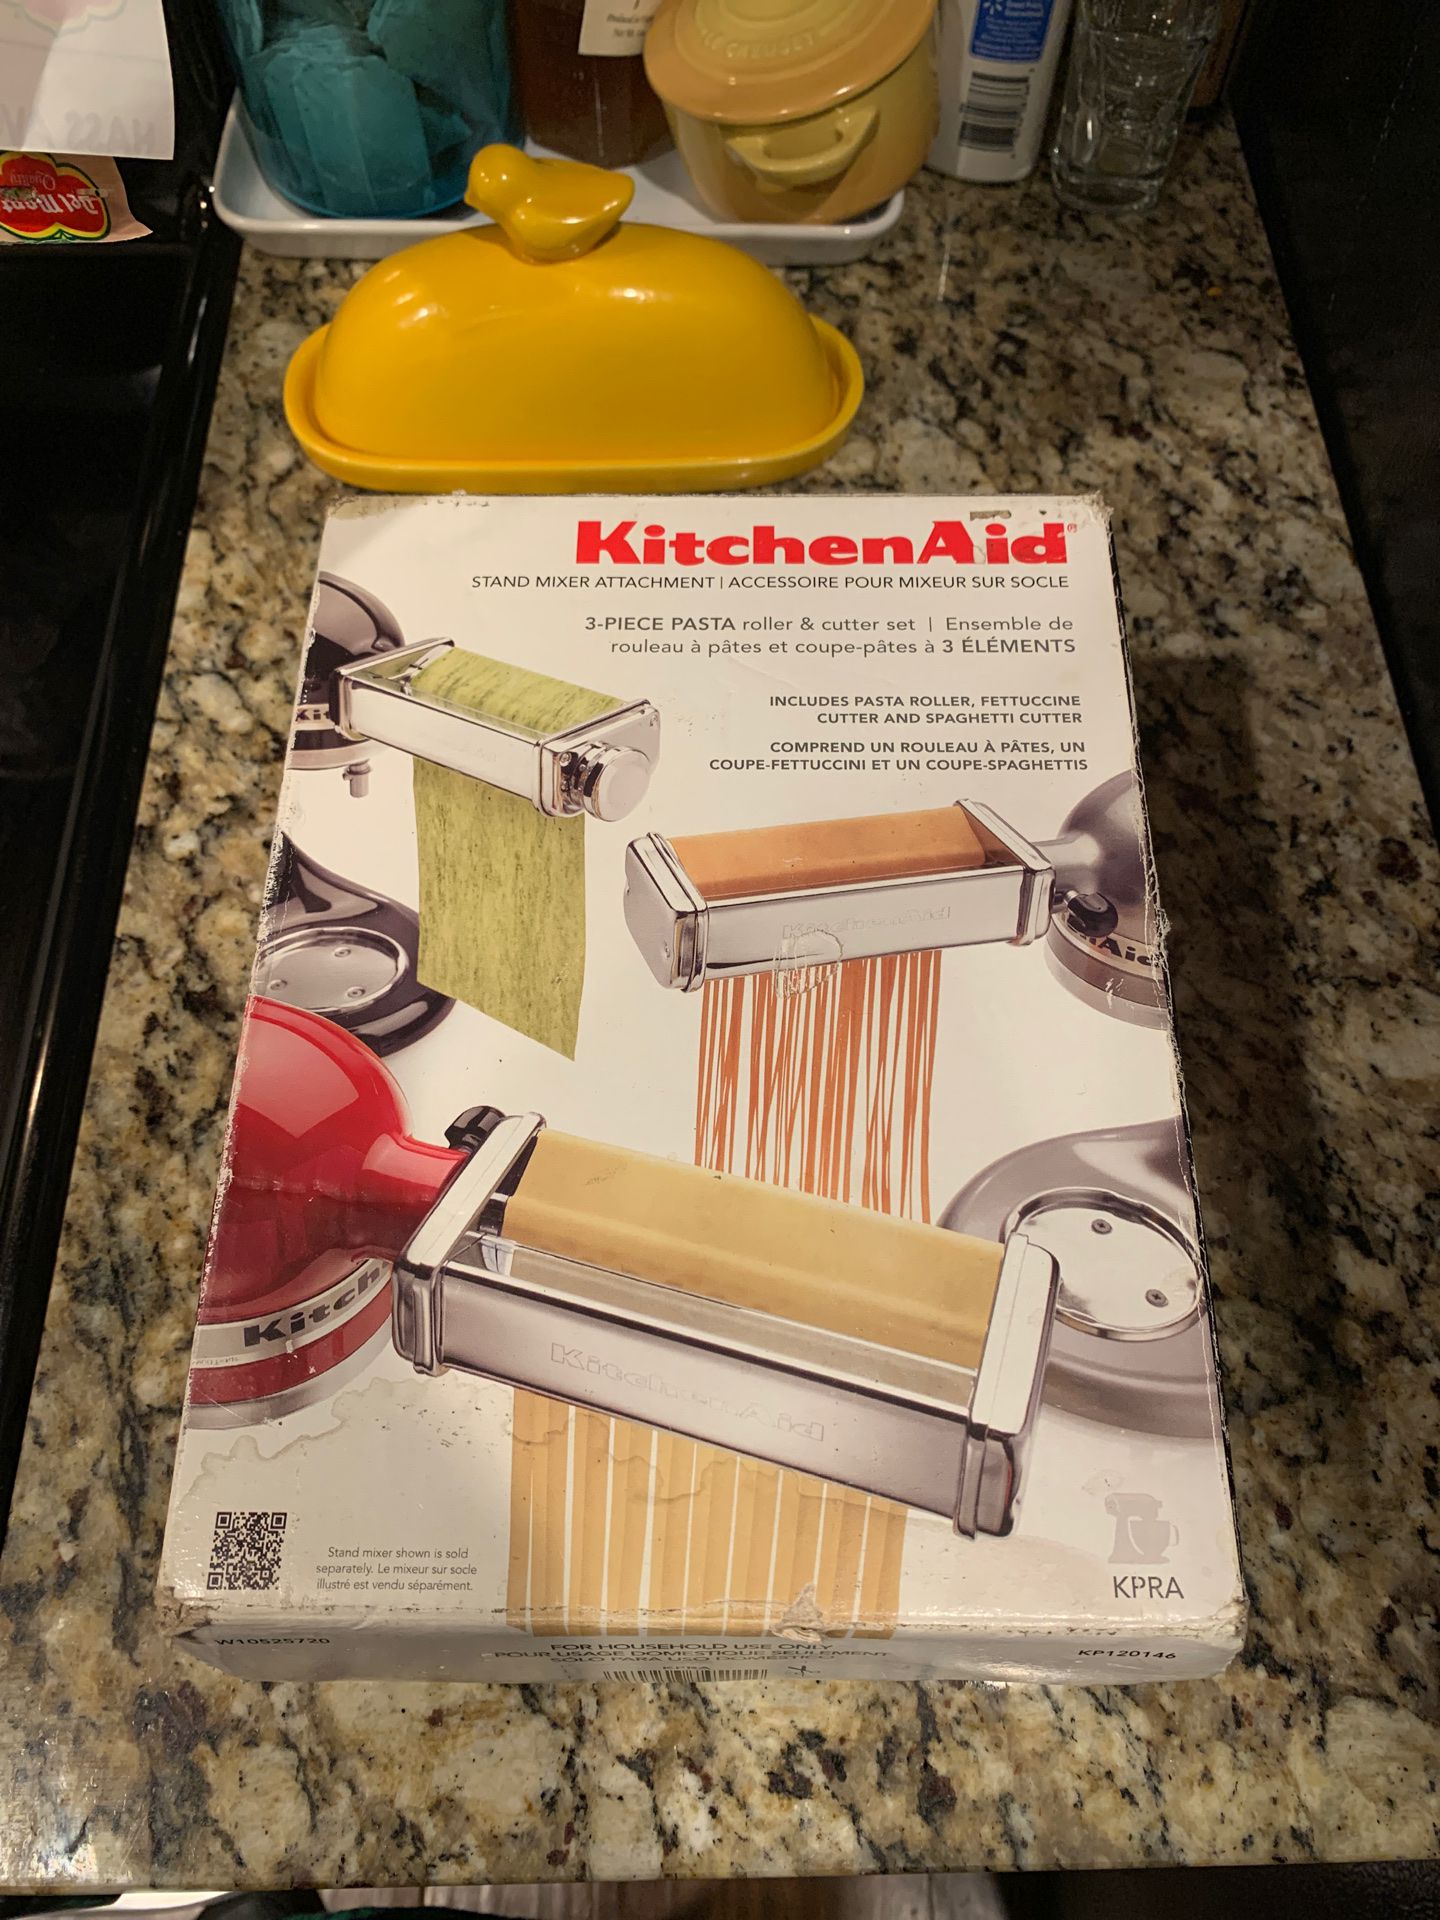 Kitchen aid pasta machine attachment